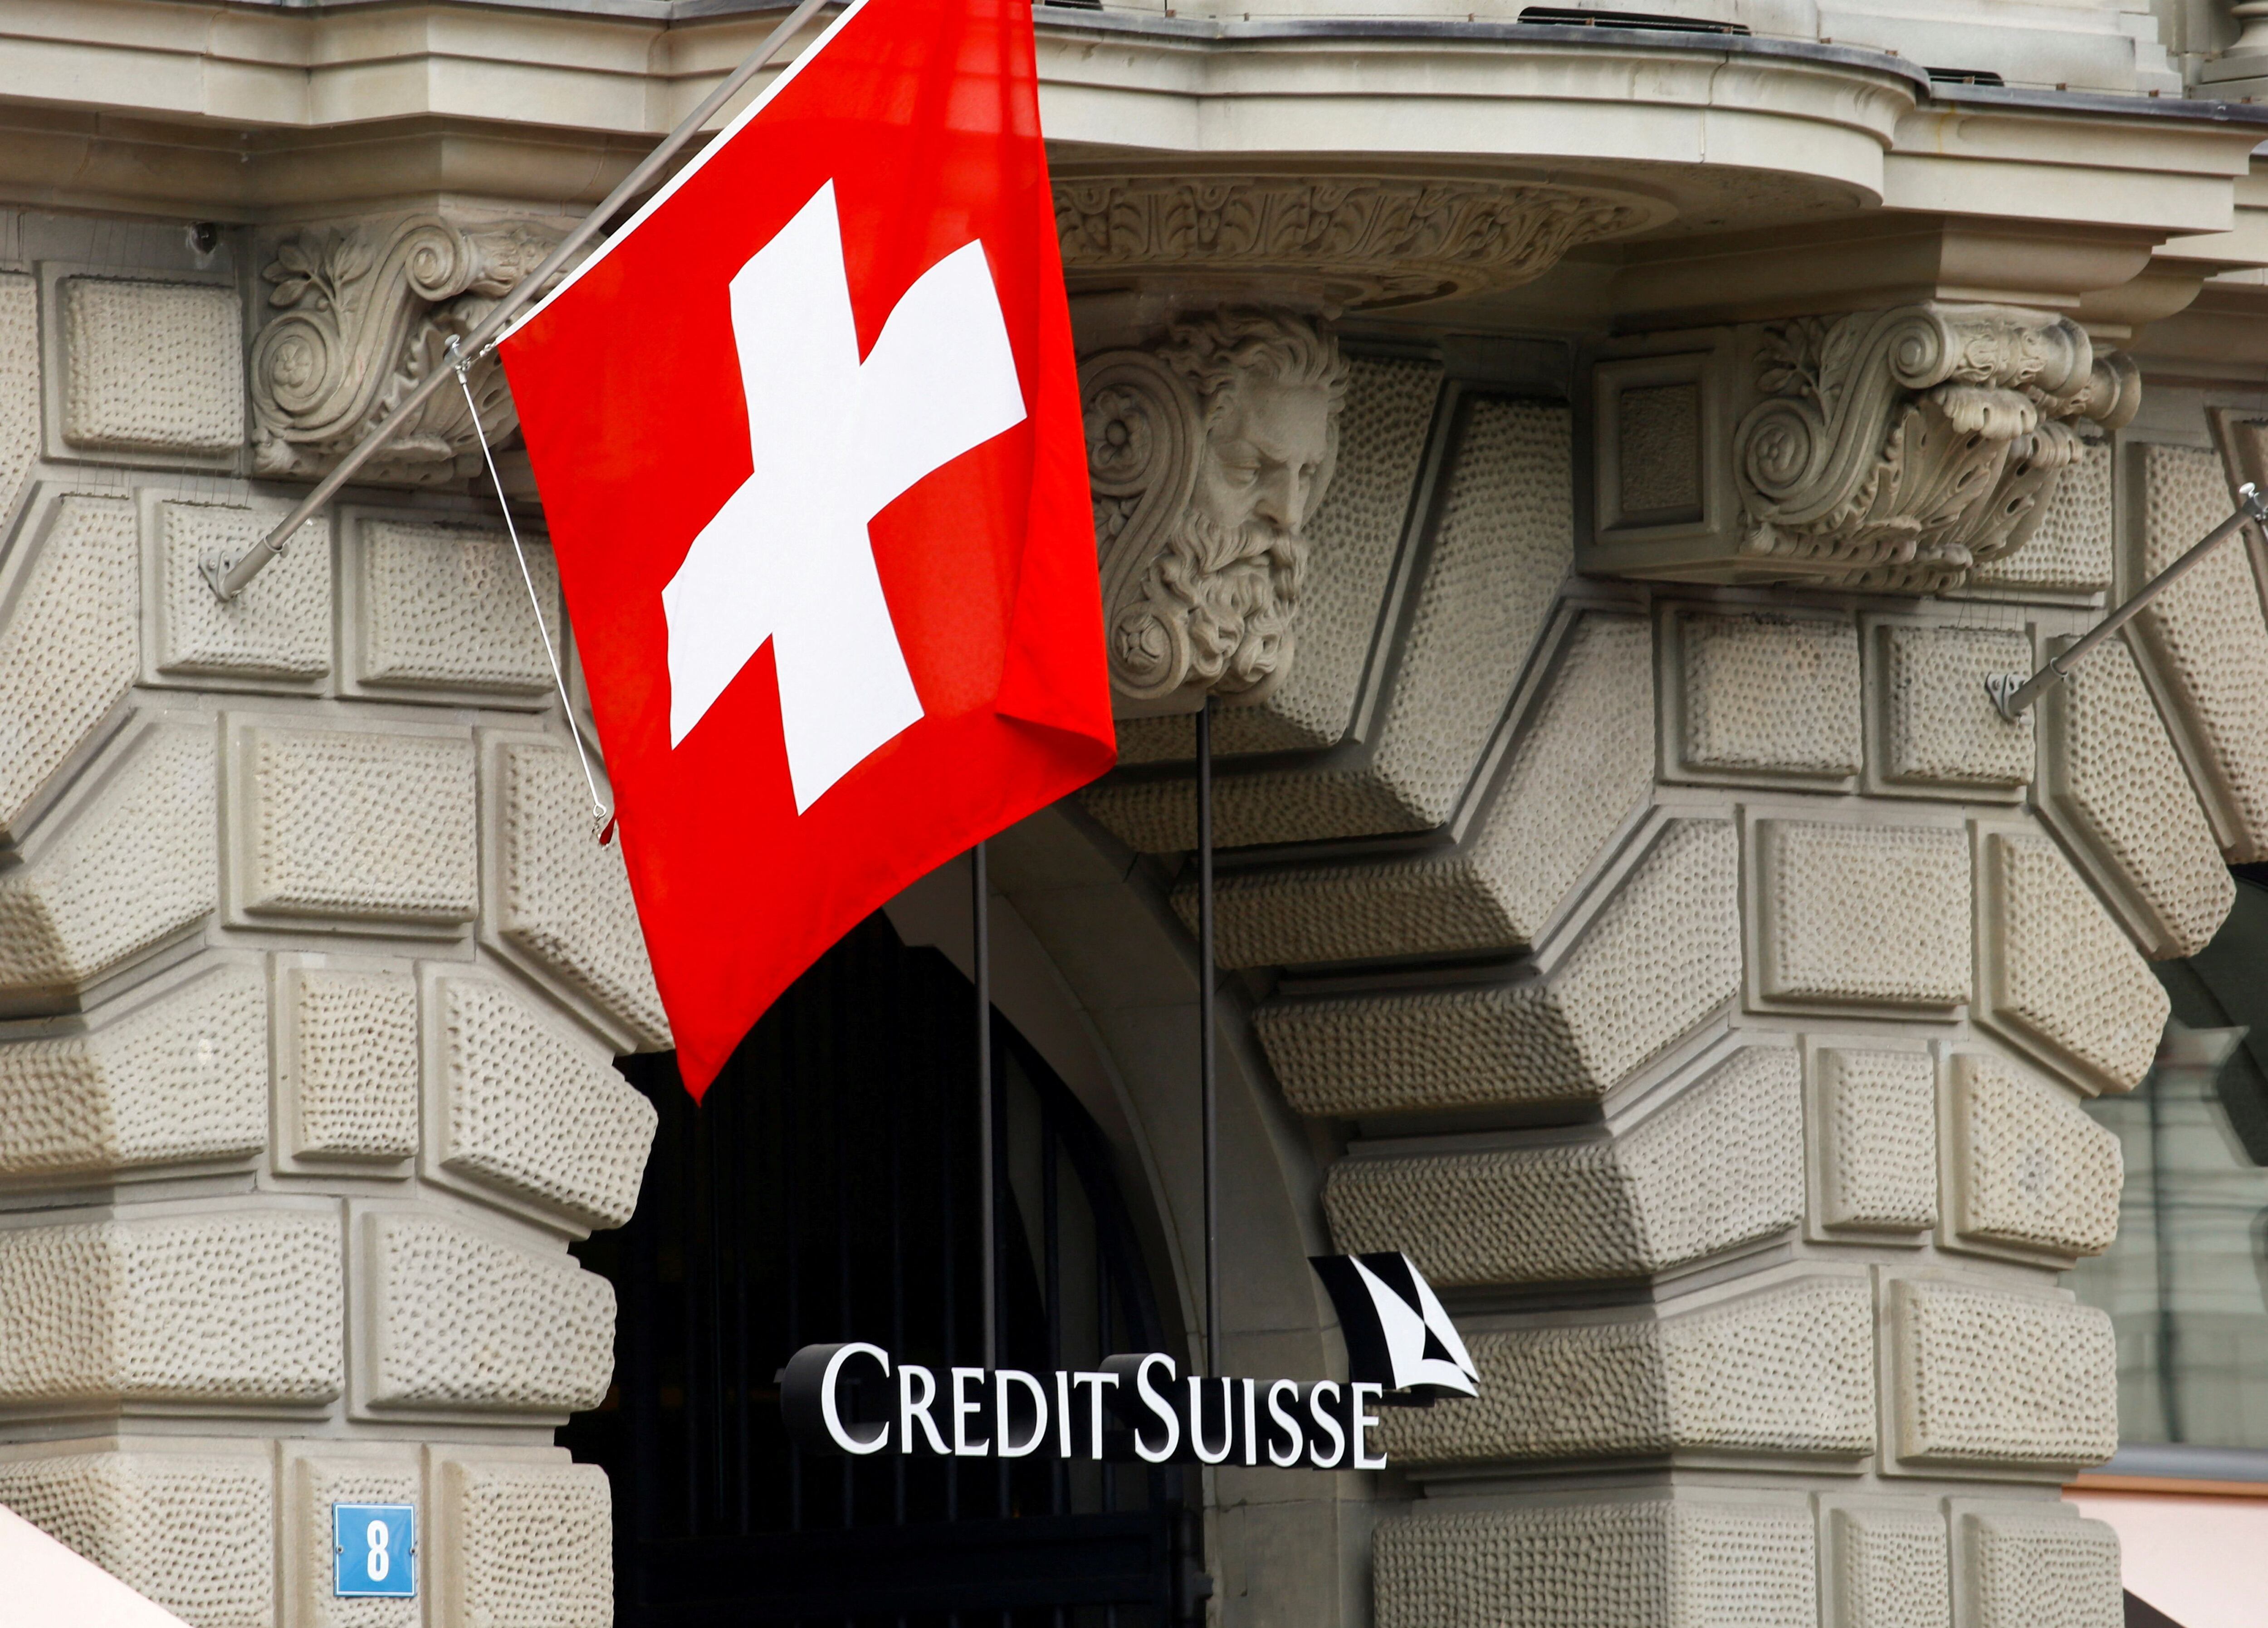 El Banco Nacional Suizo se comprometió en la madrugada del jueves a prestar 50.600 millones de euros a Credit Suisse, lo que parece haber restablecido parcialmente la confianza de los inversores. (REUTERS)